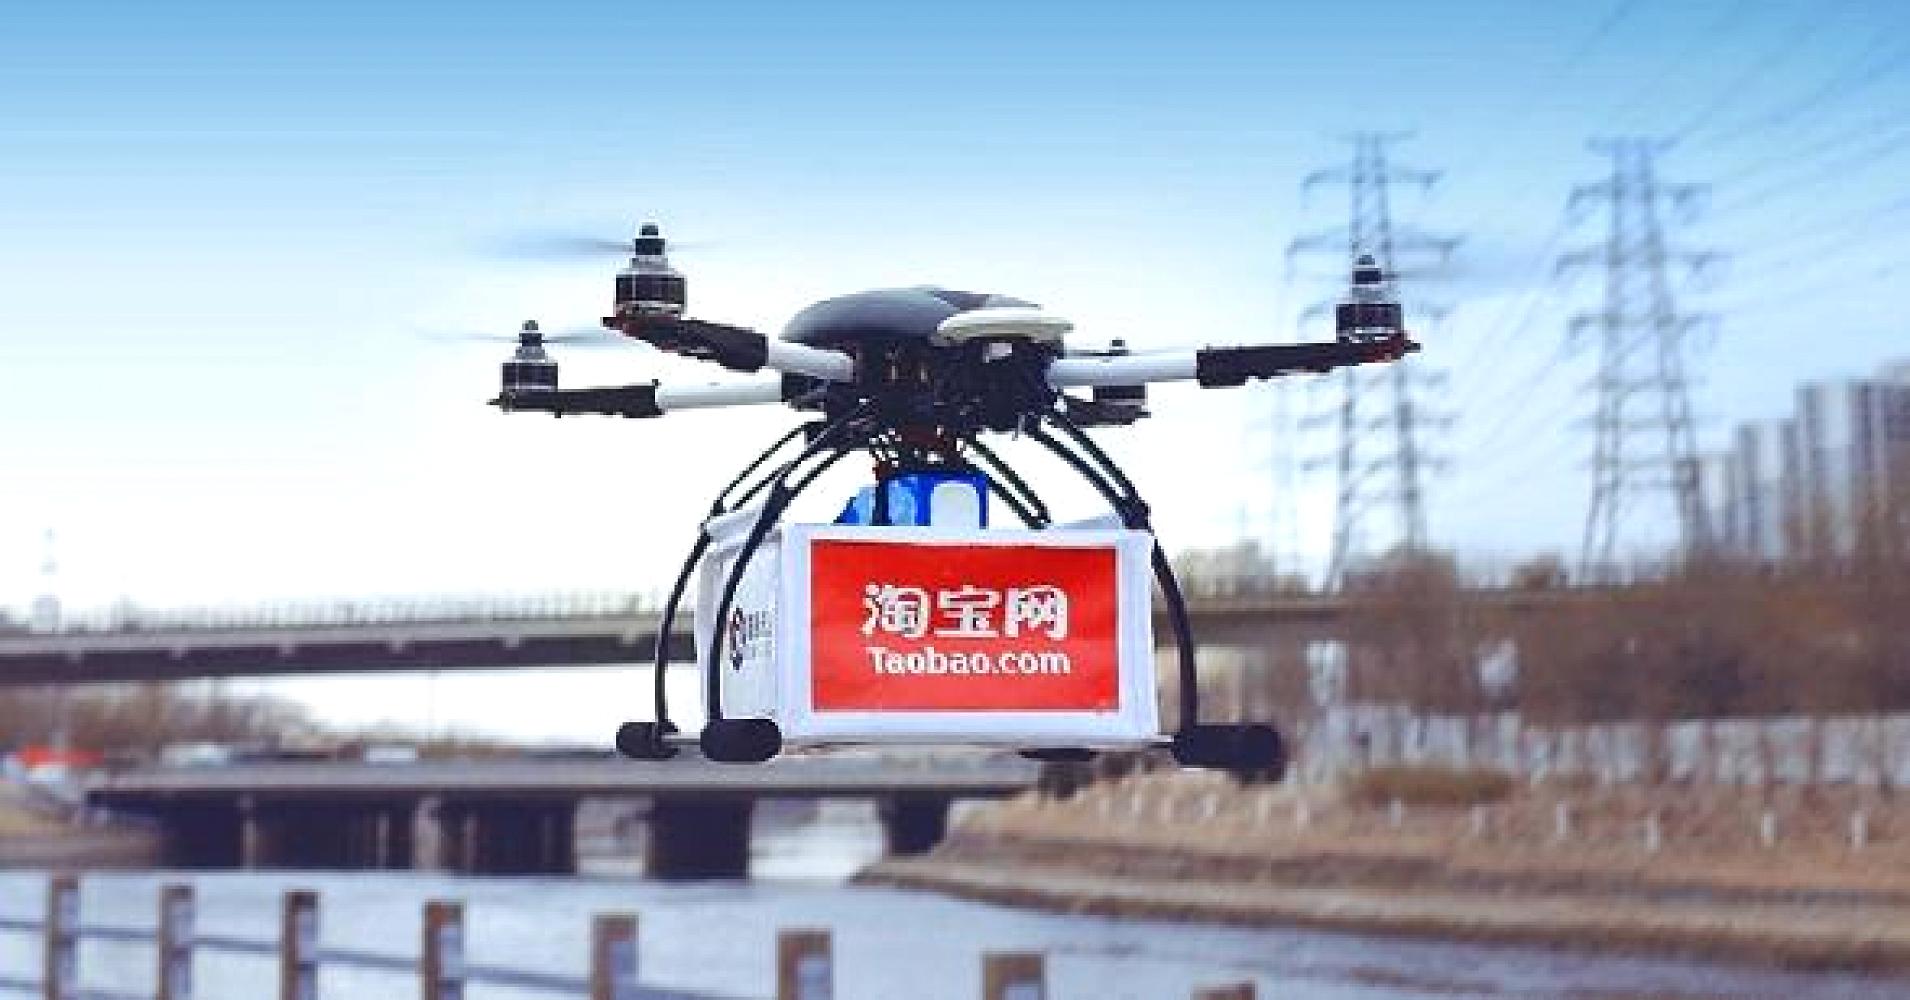 compania china alibaba emplea drones para entregar paquetes 102396417 drone 1910x1000